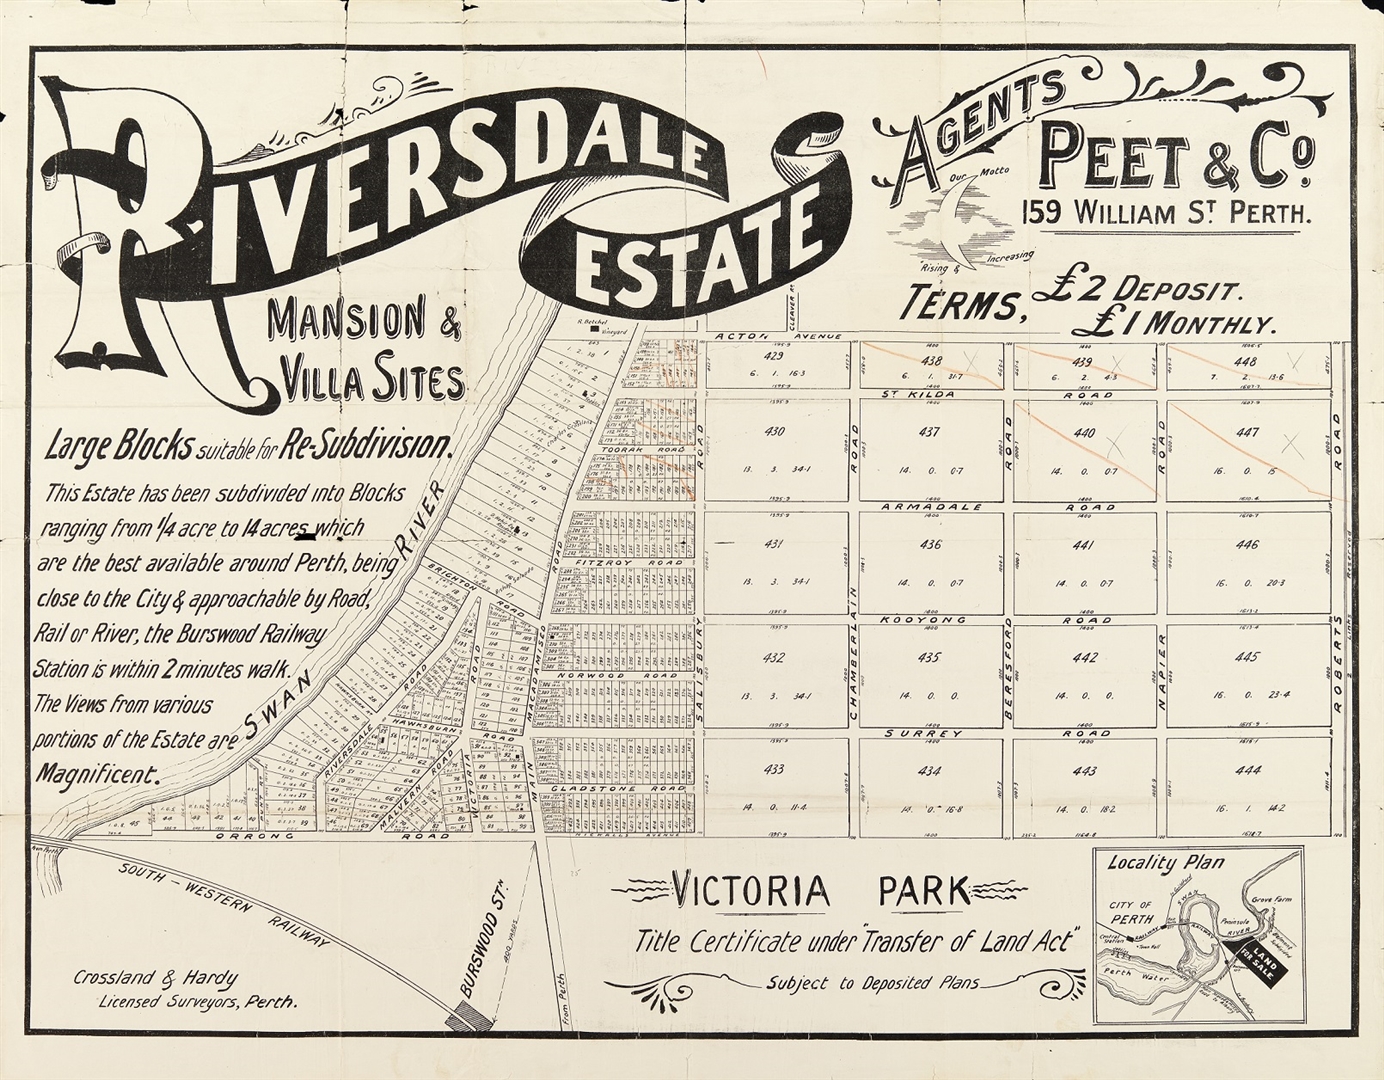 Riversdale Estate : mansion & villa sites [1895?] Image